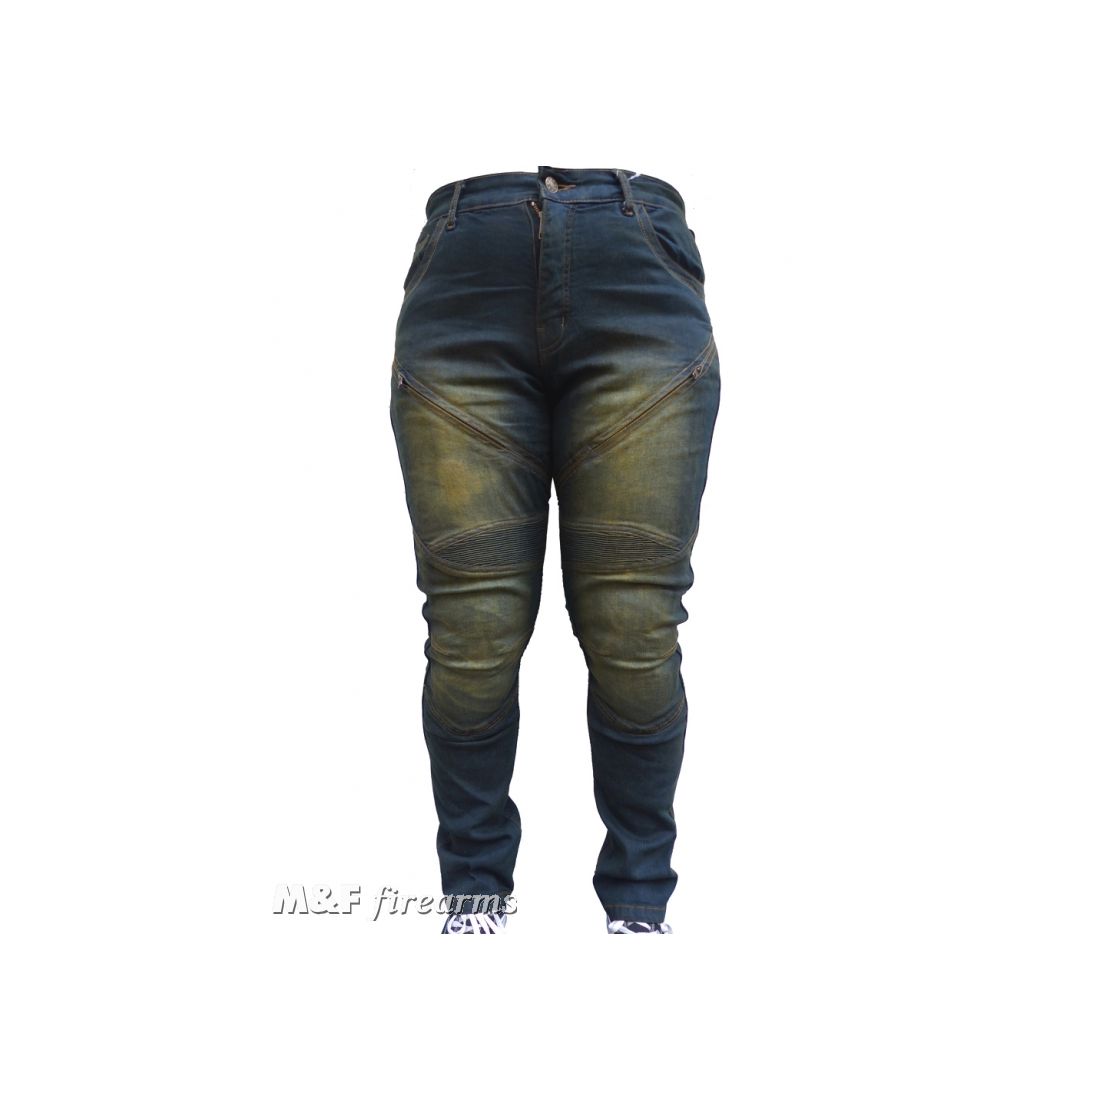 Herren Road- Jeans "Stonewashed" in Antik- Optik DENIM- Stretch- Gewebe mit Netz- und Aramidfaser- Futter sowie Knieprotektoren